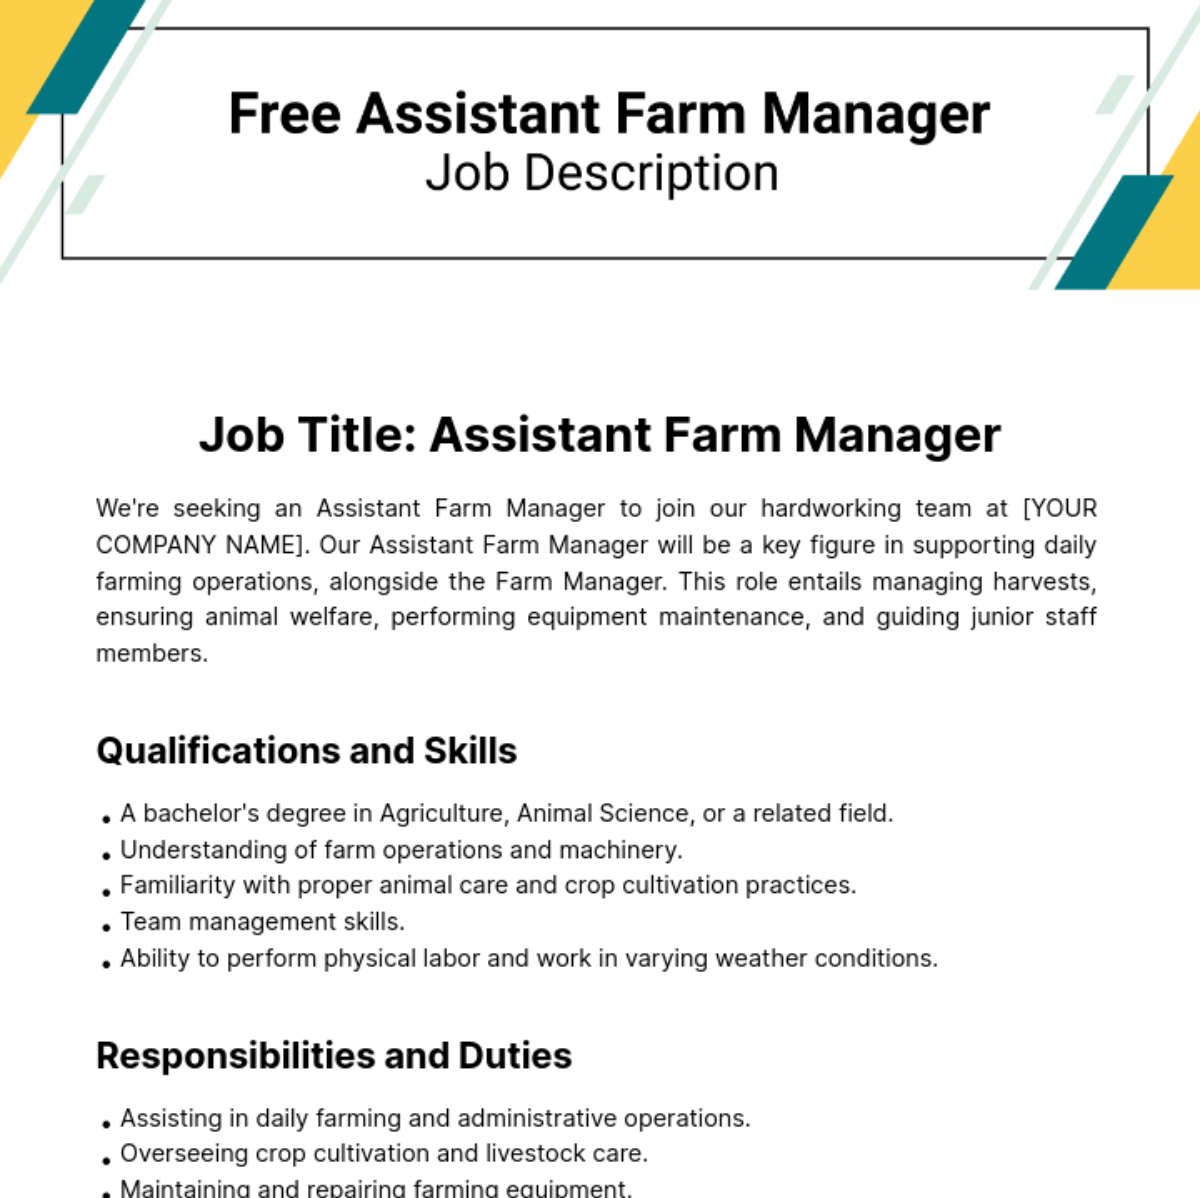 Free Assistant Farm Manager Job Description Template